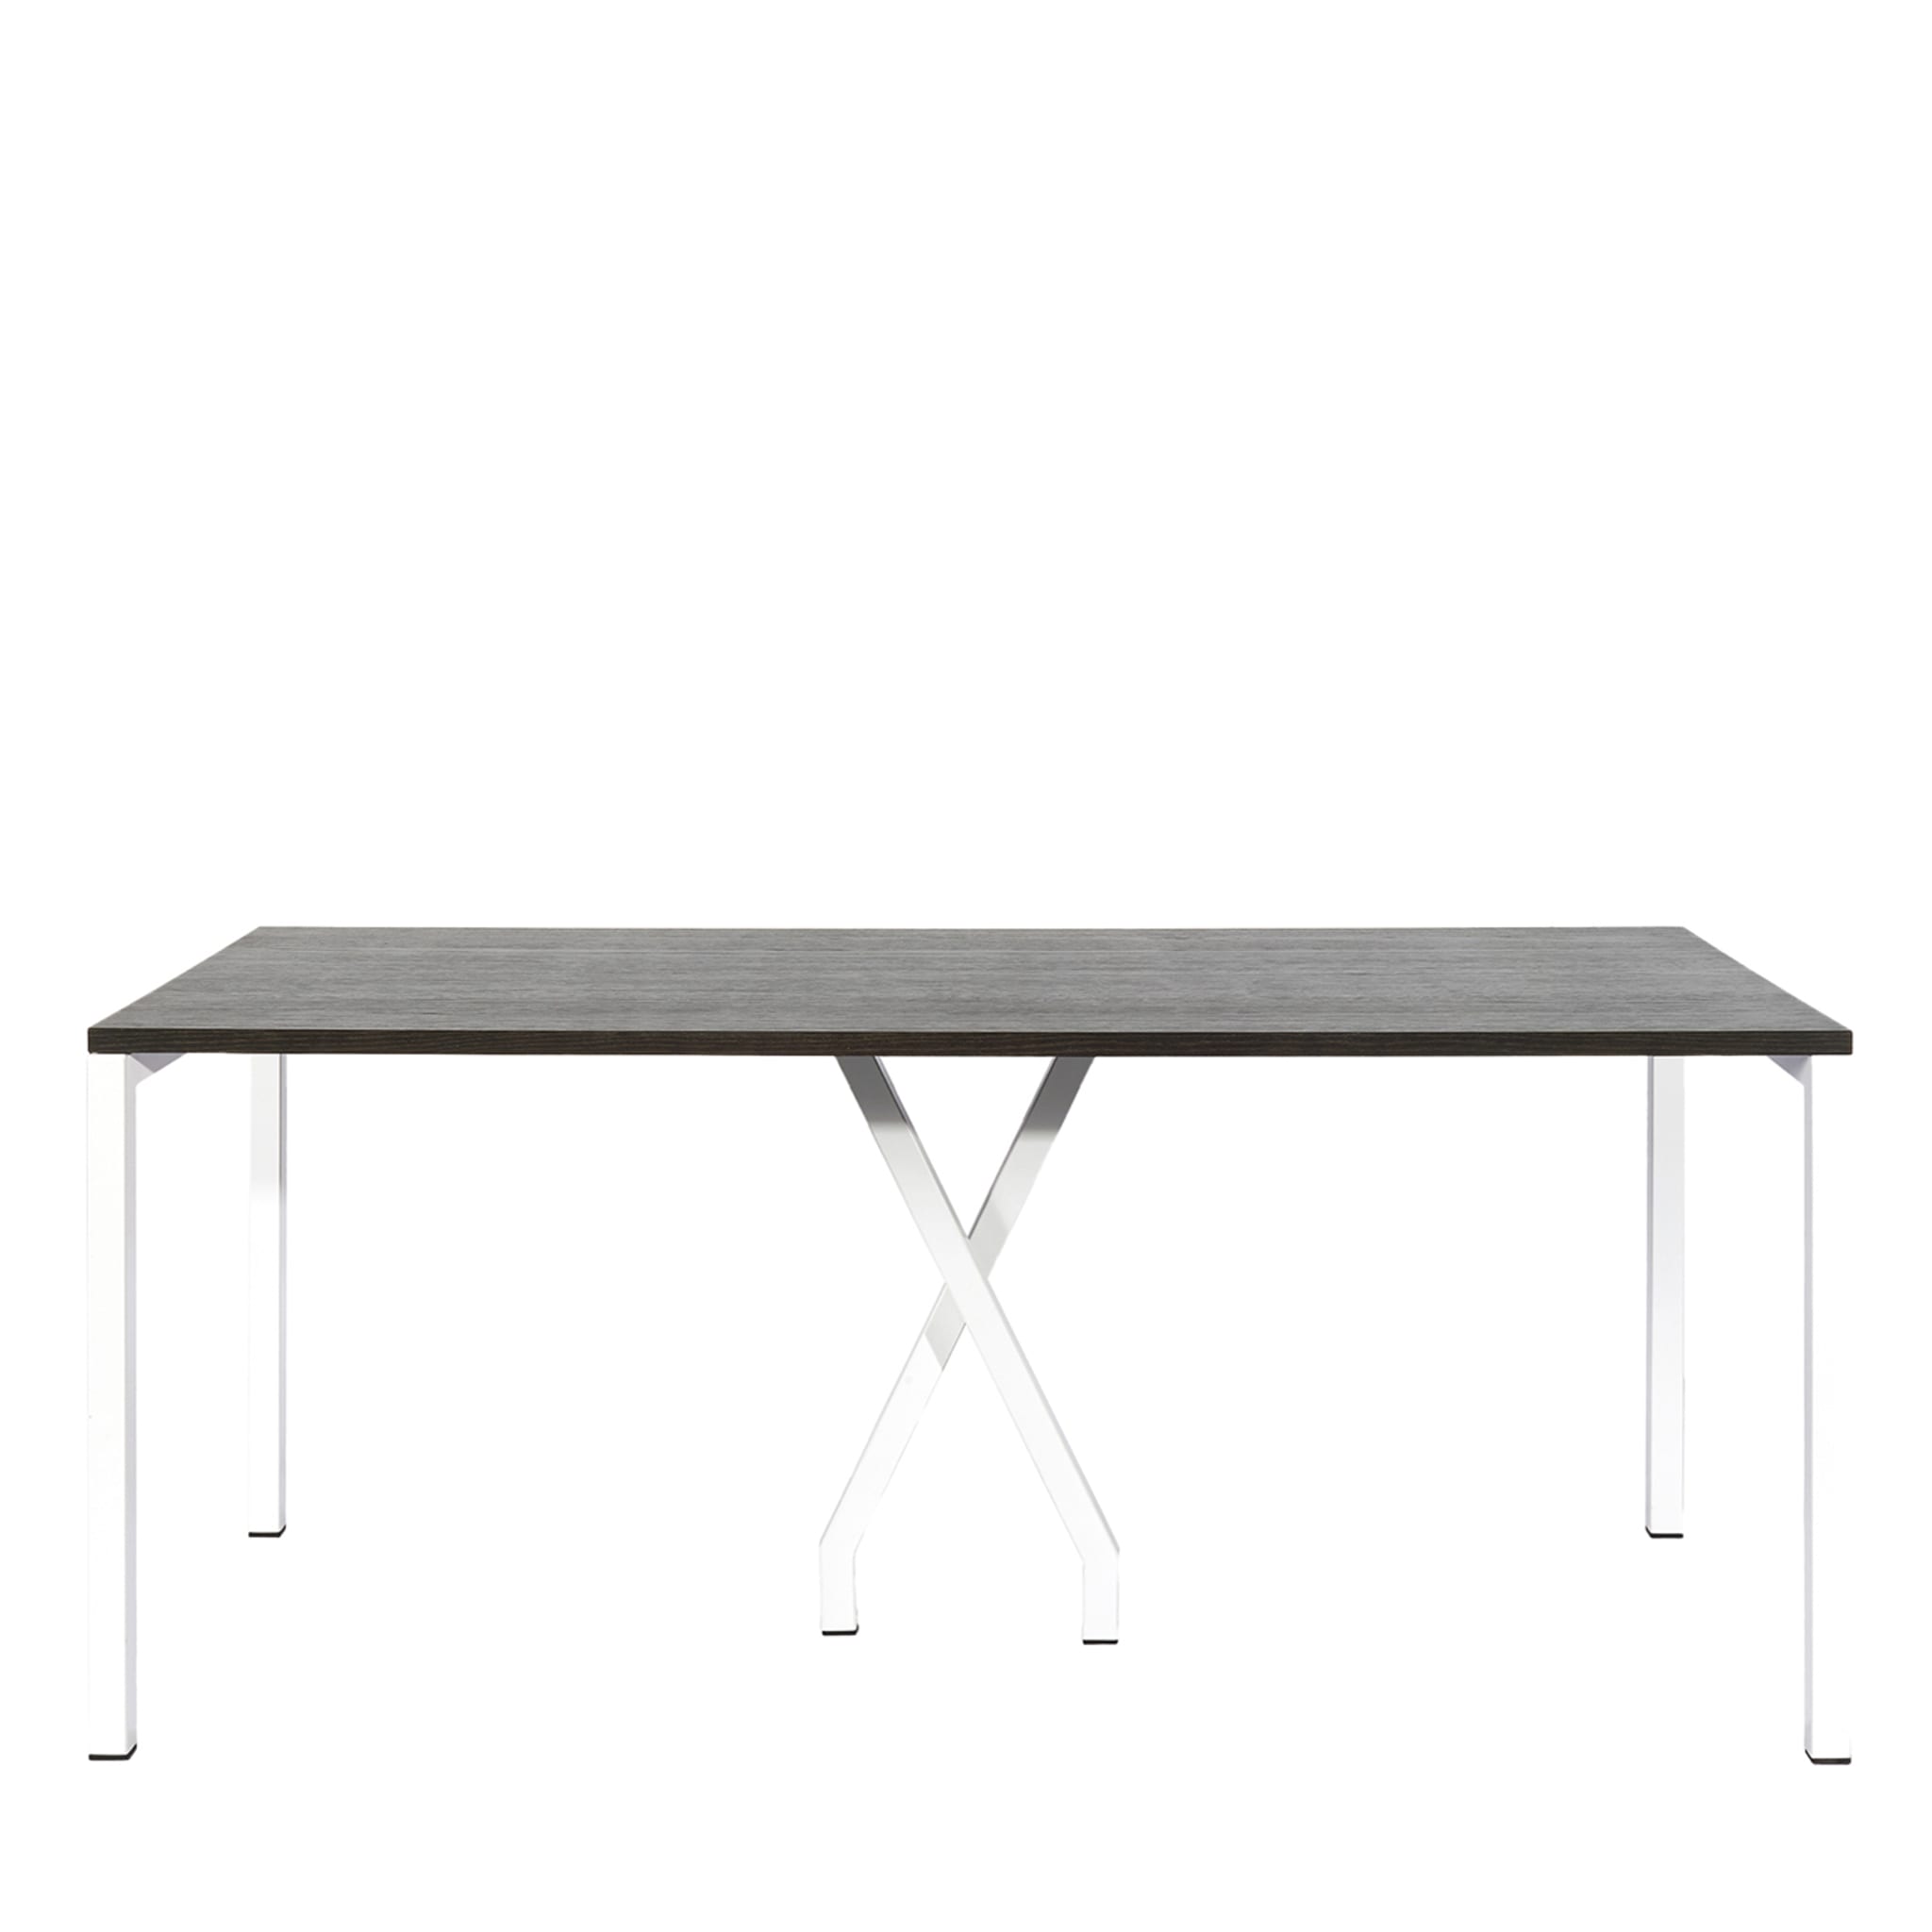 Cavalletta Rectangular Black & White Table by Studiocharlie  - Main view